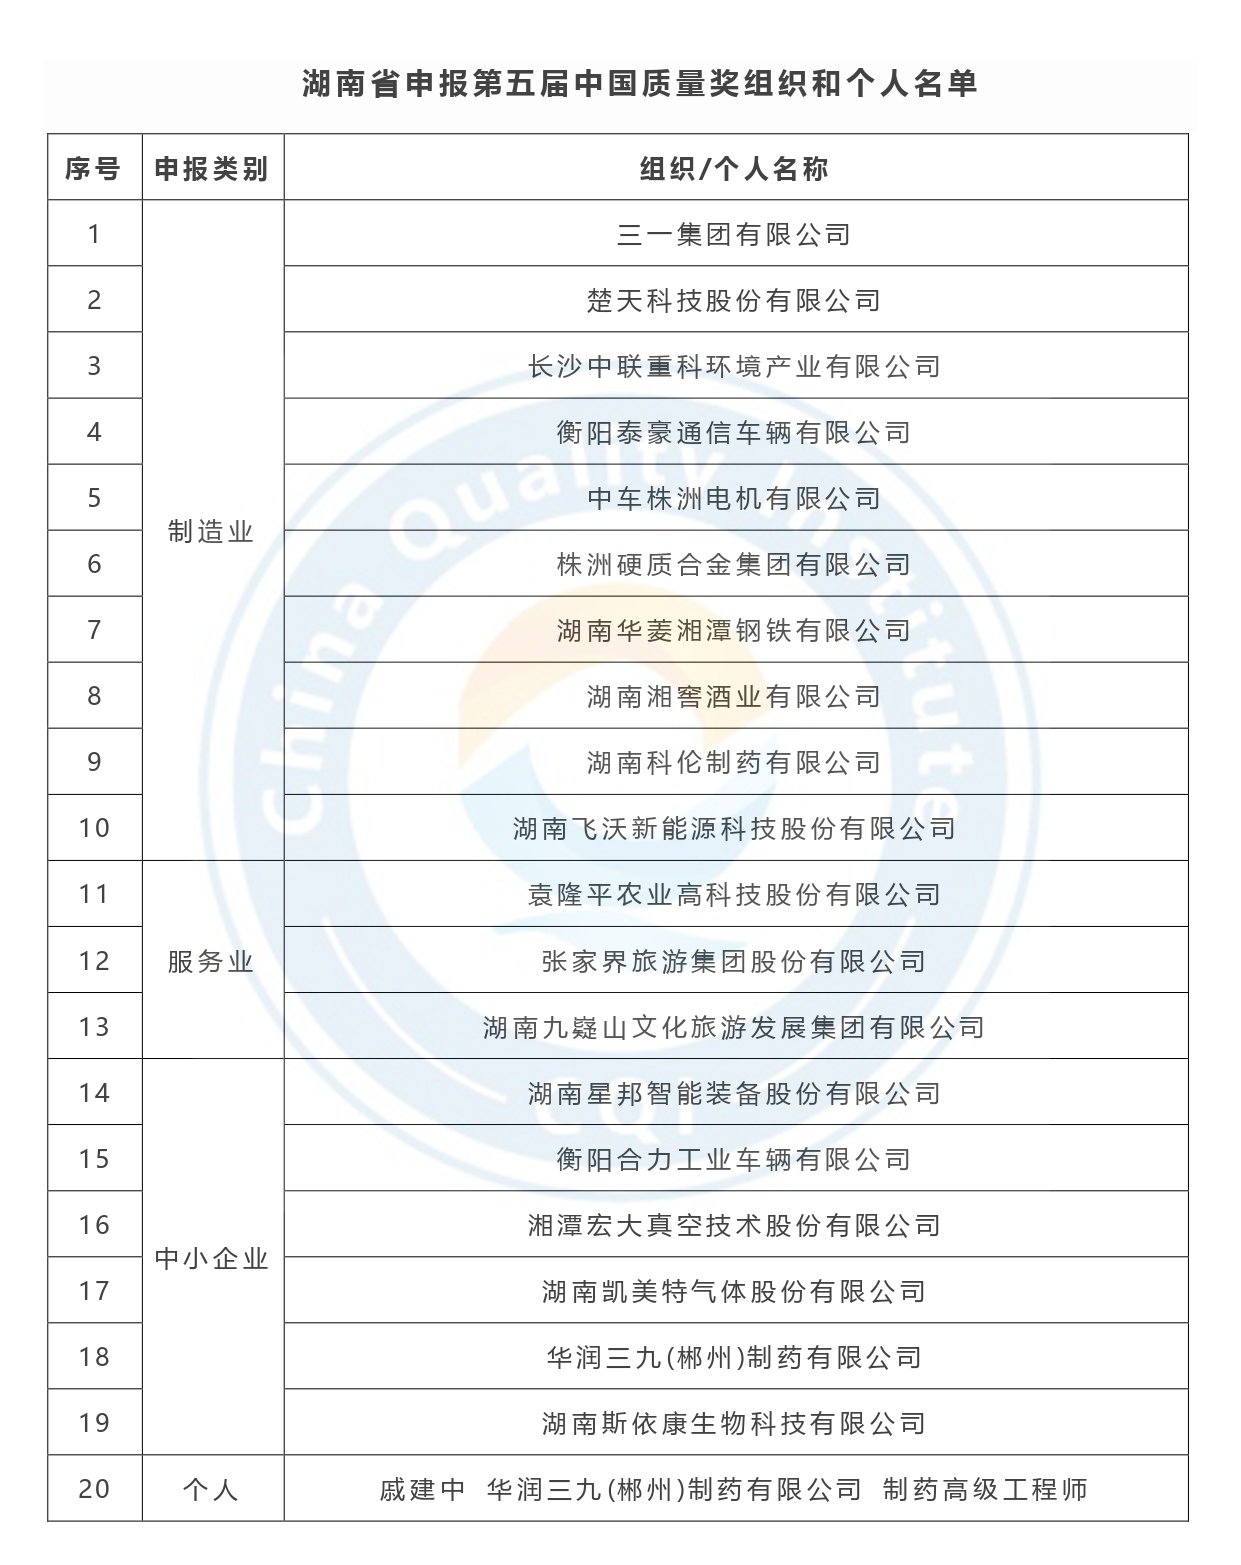 第五届中国质量奖申报名单公示-湖南省.jpg